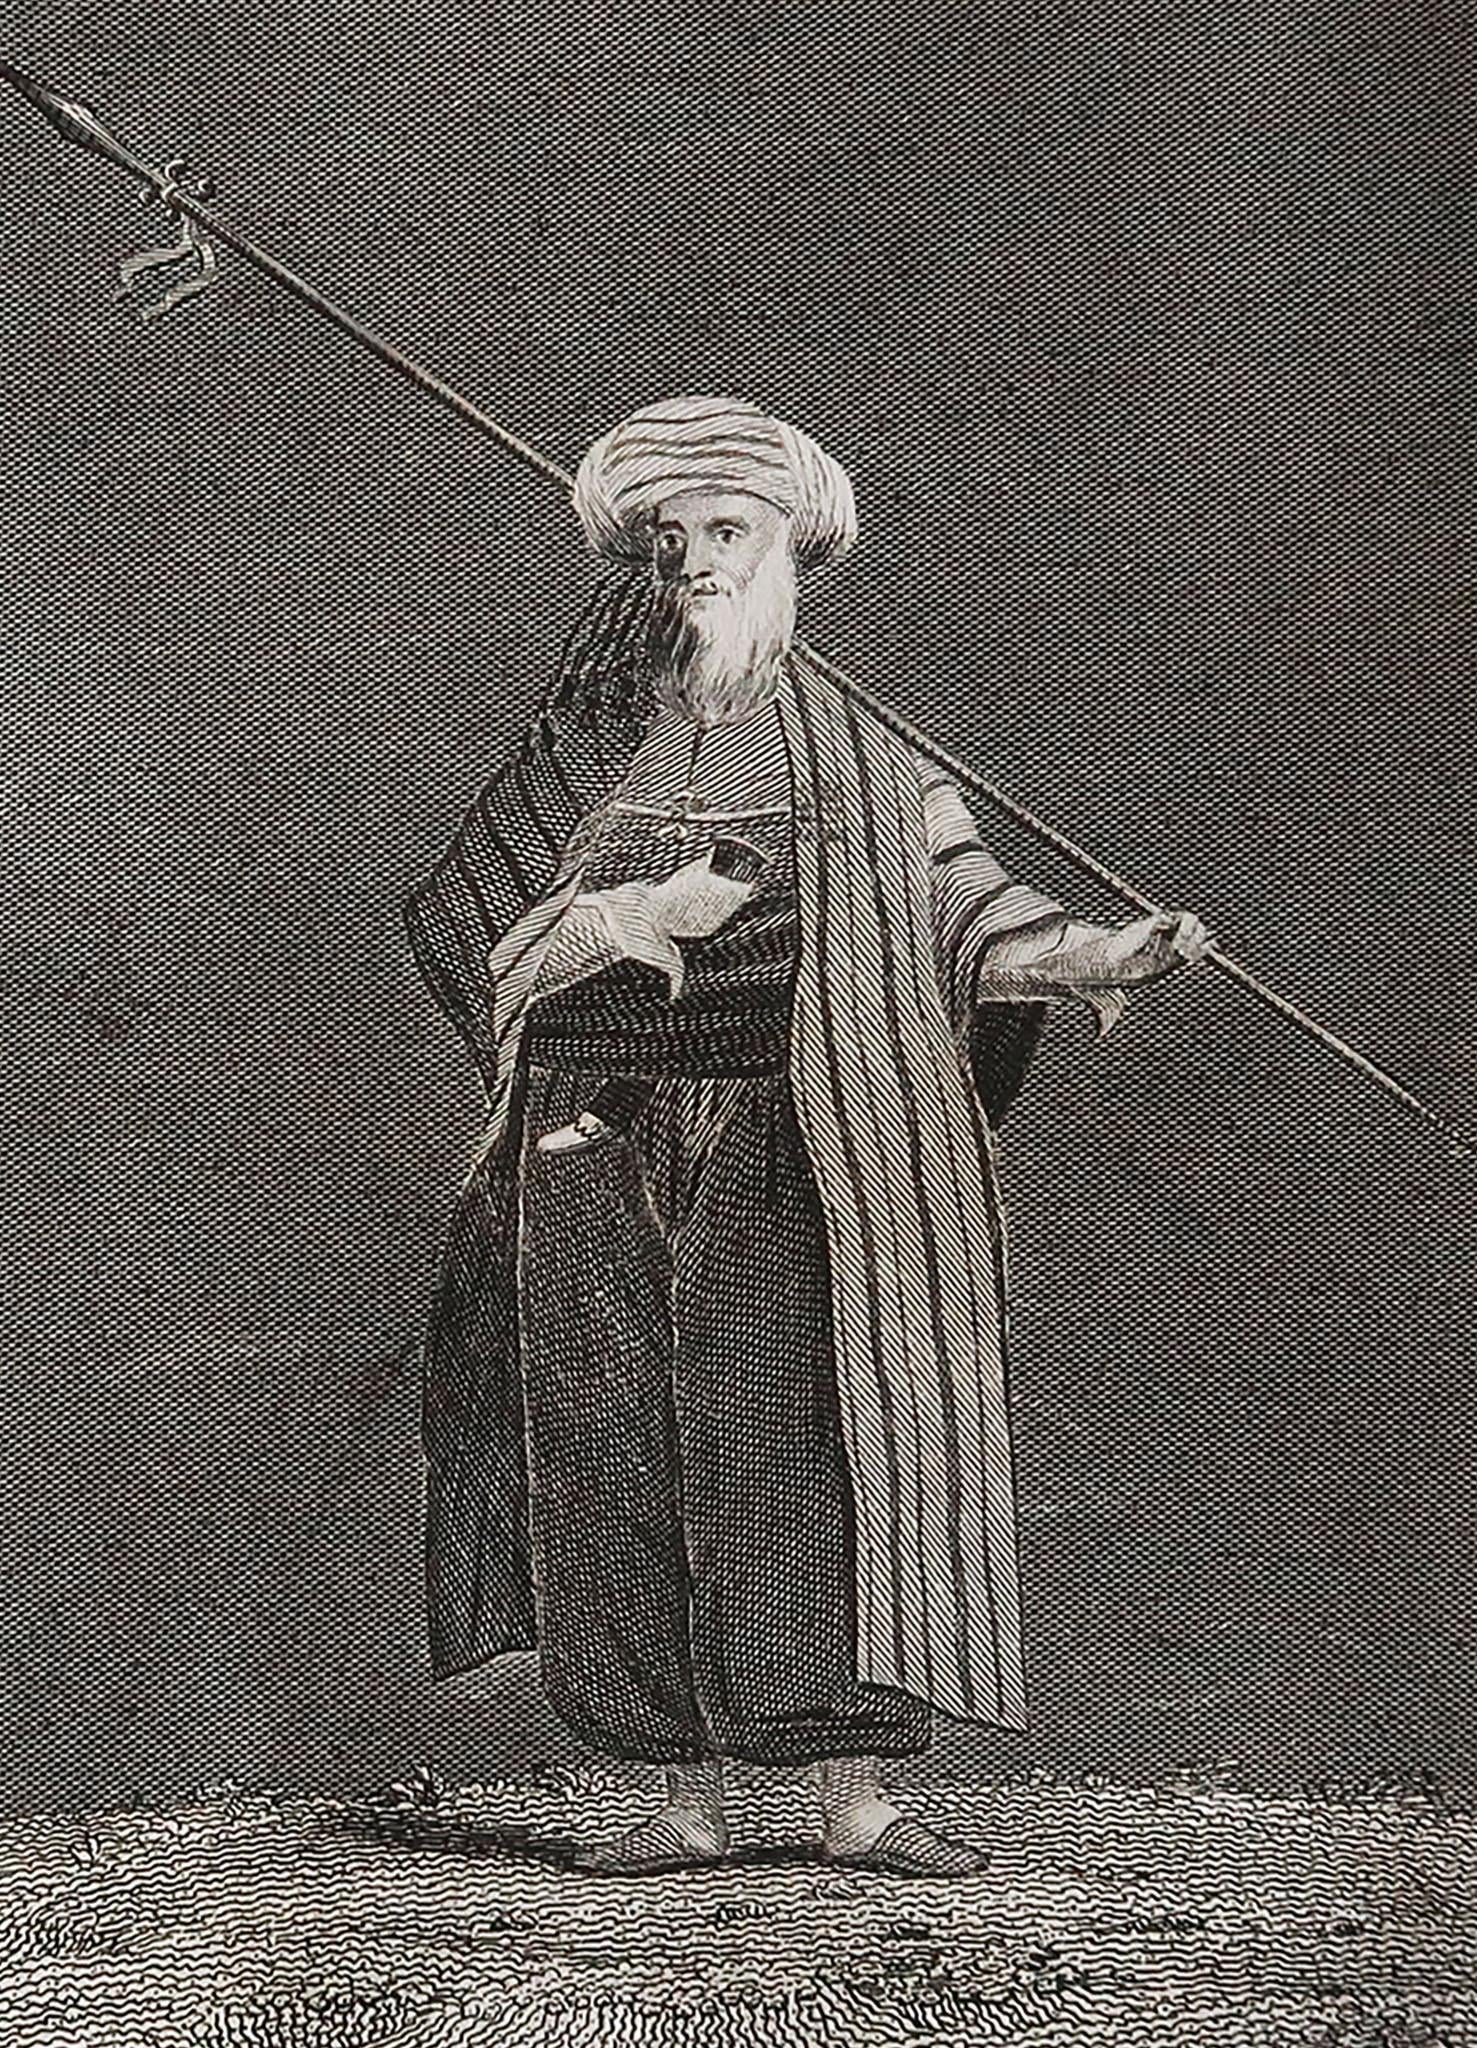 Belle image d'un cheikh arabe

Gravure sur cuivre par T. Clerk

Publié par Mackenzie et Dent. 1817

Non encadré.